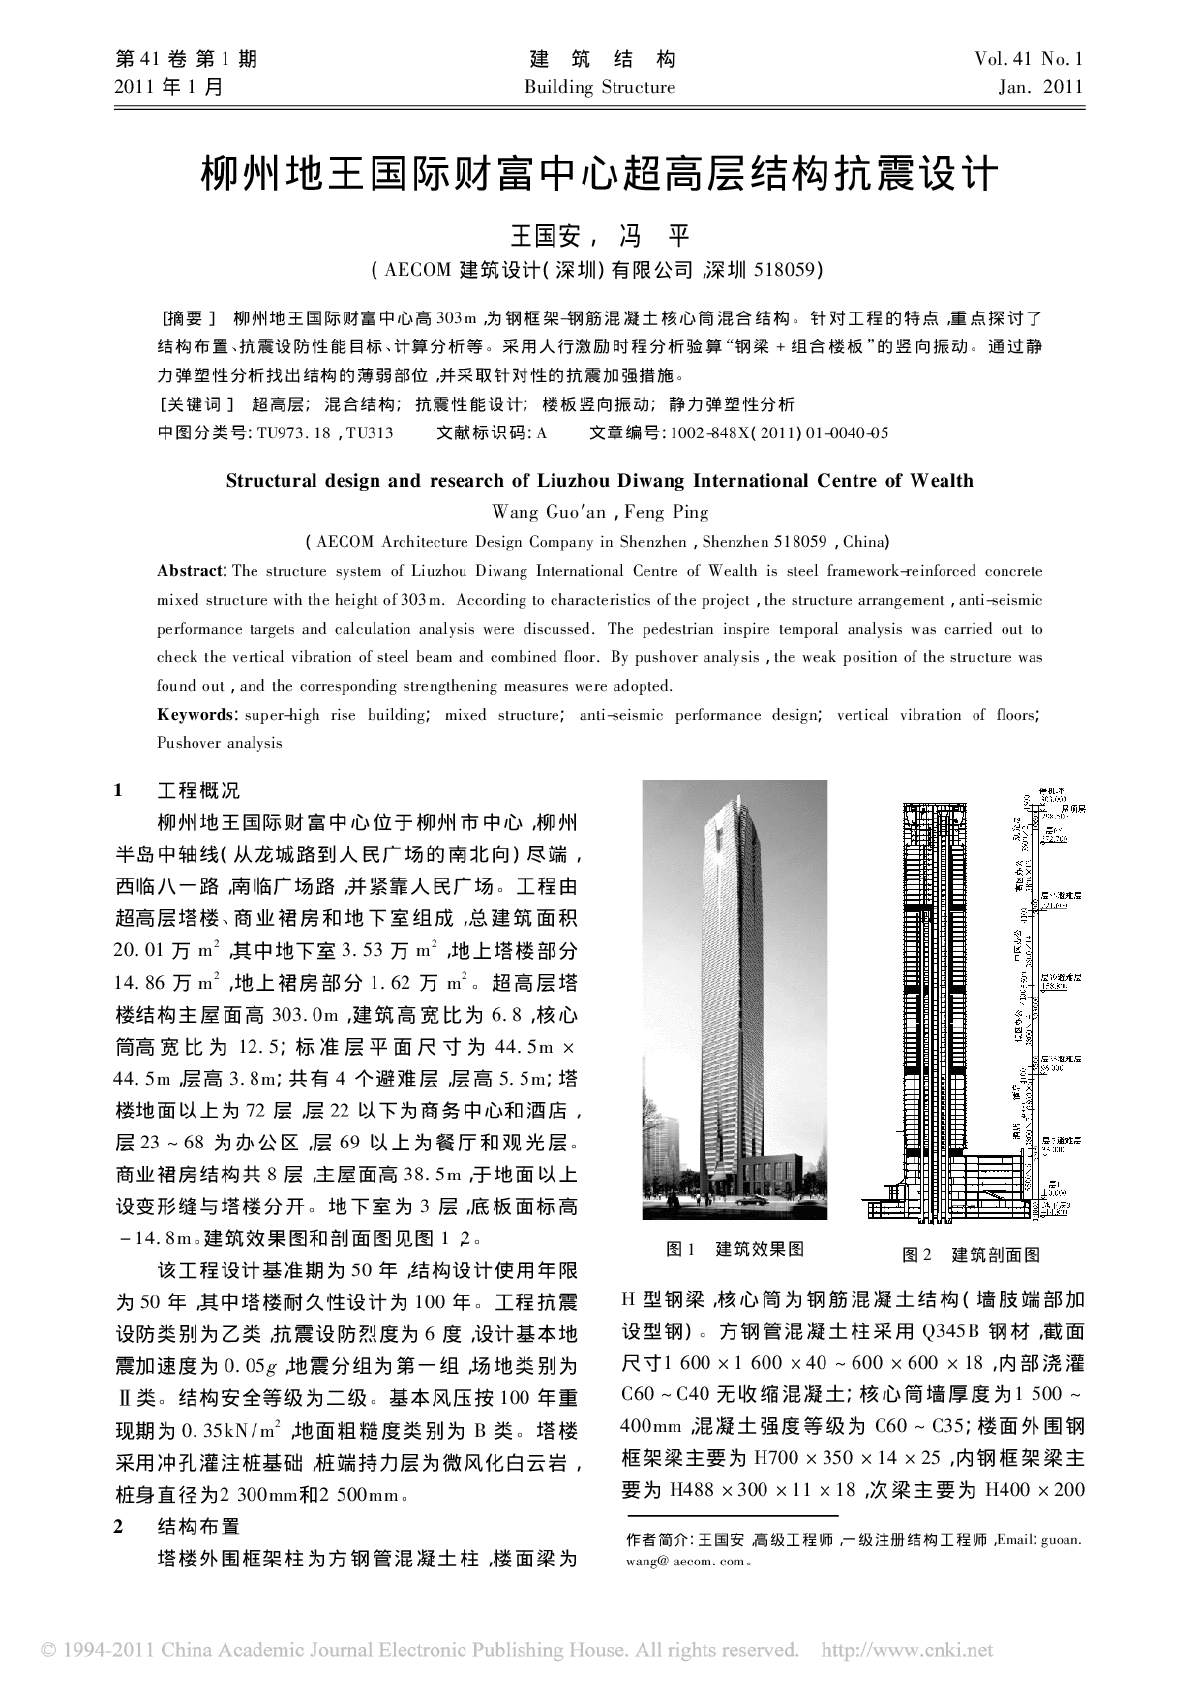 柳州地王国际财富中心超高层结构抗震设计-图一